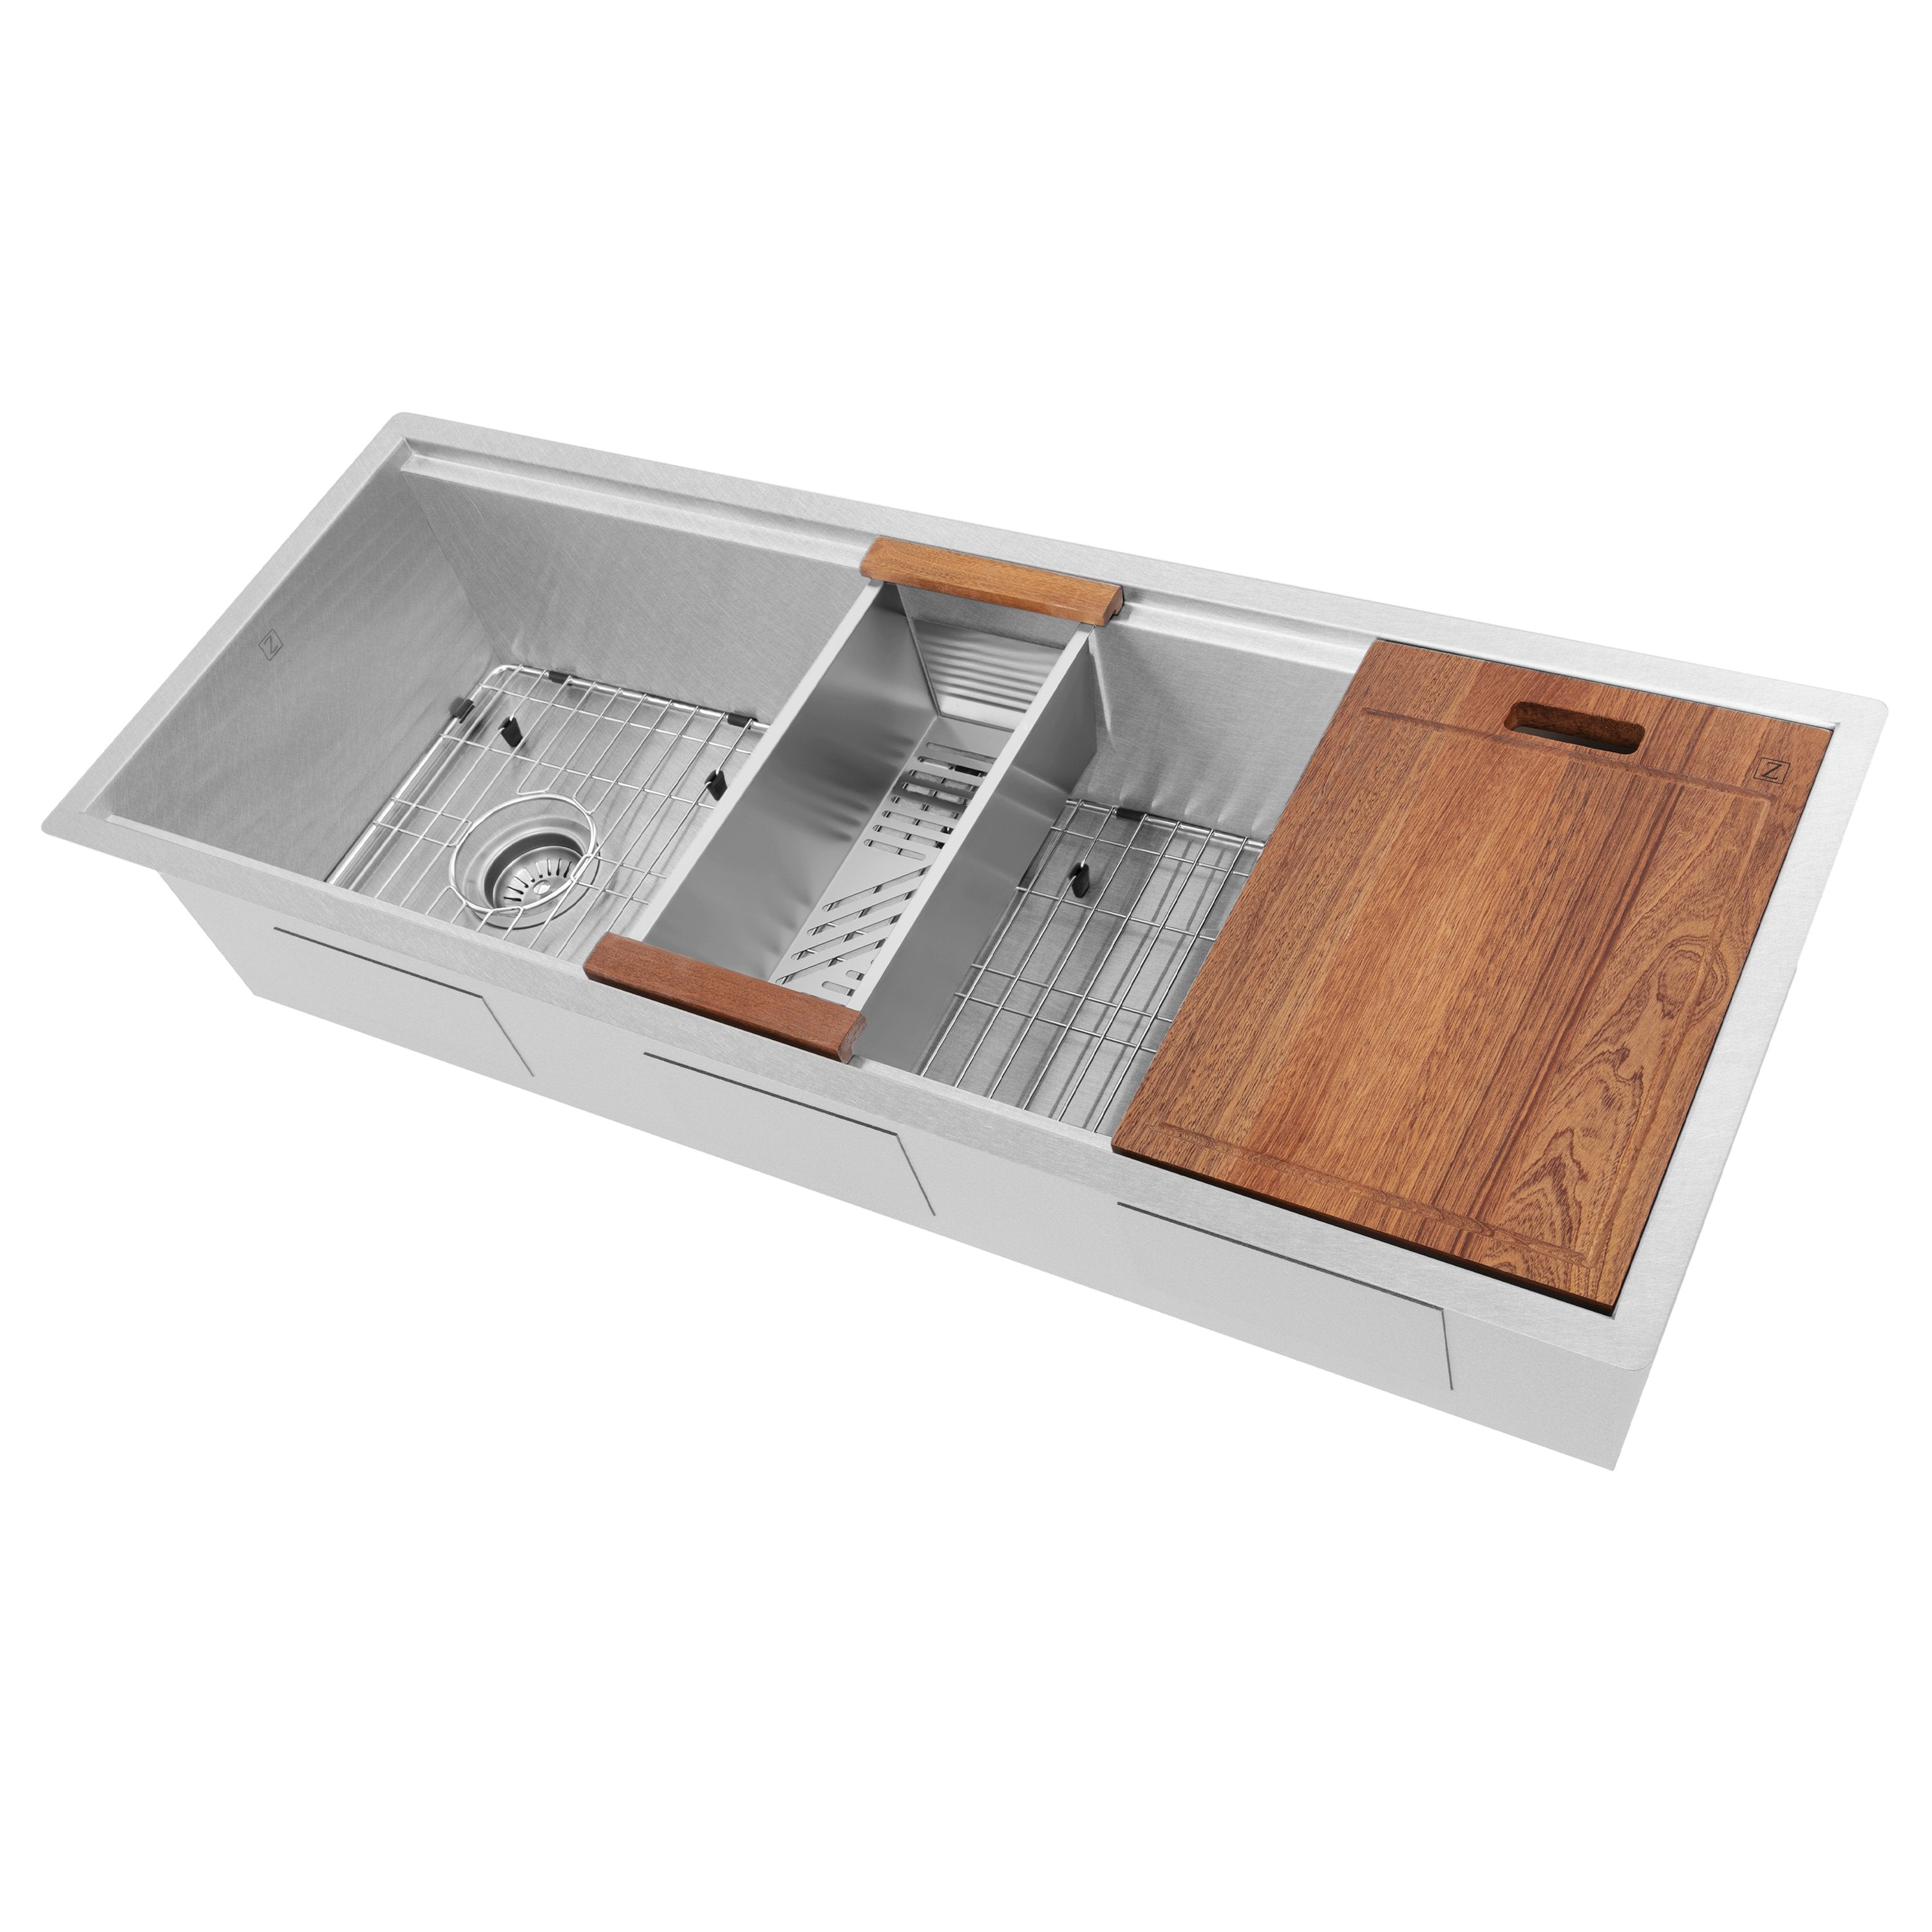 ZLINE Kitchen and Bath, ZLINE Garmisch 43 Inch Undermount Single Bowl Sink with Accessories (SLS-43), SLS-43S,